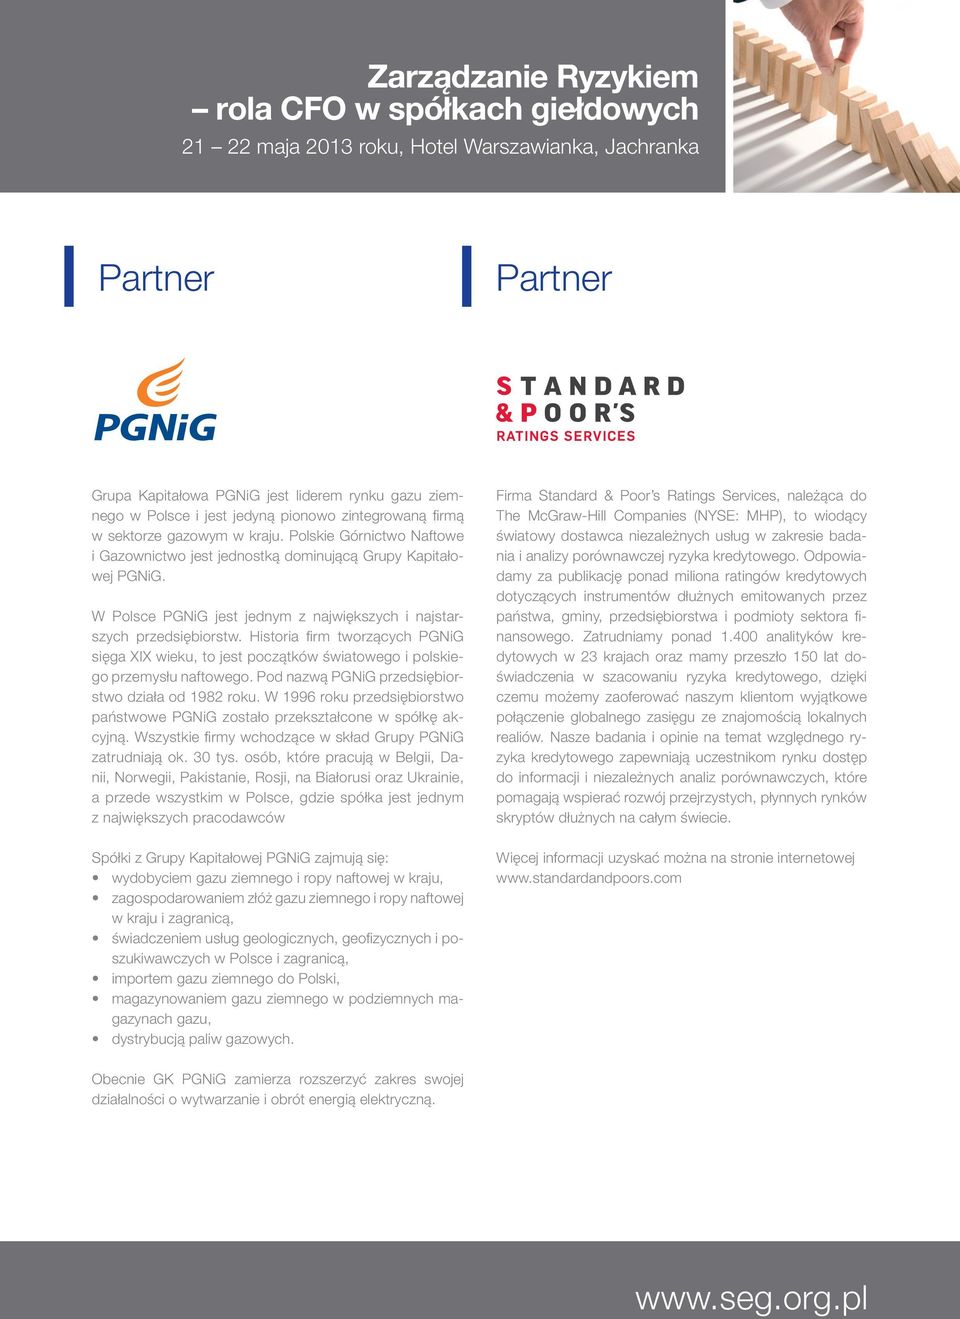 W Polsce PGNiG jest jednym z największych i najstarszych przedsiębiorstw. Historia firm tworzących PGNiG sięga XIX wieku, to jest początków światowego i polskiego przemysłu naftowego.